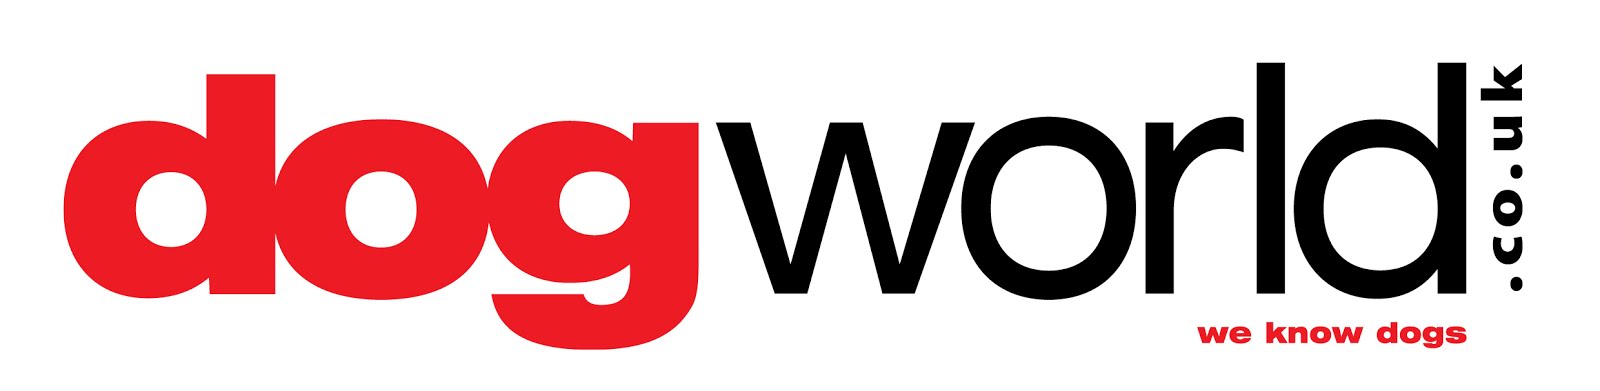 The Dog World Ltd Major Sponsor